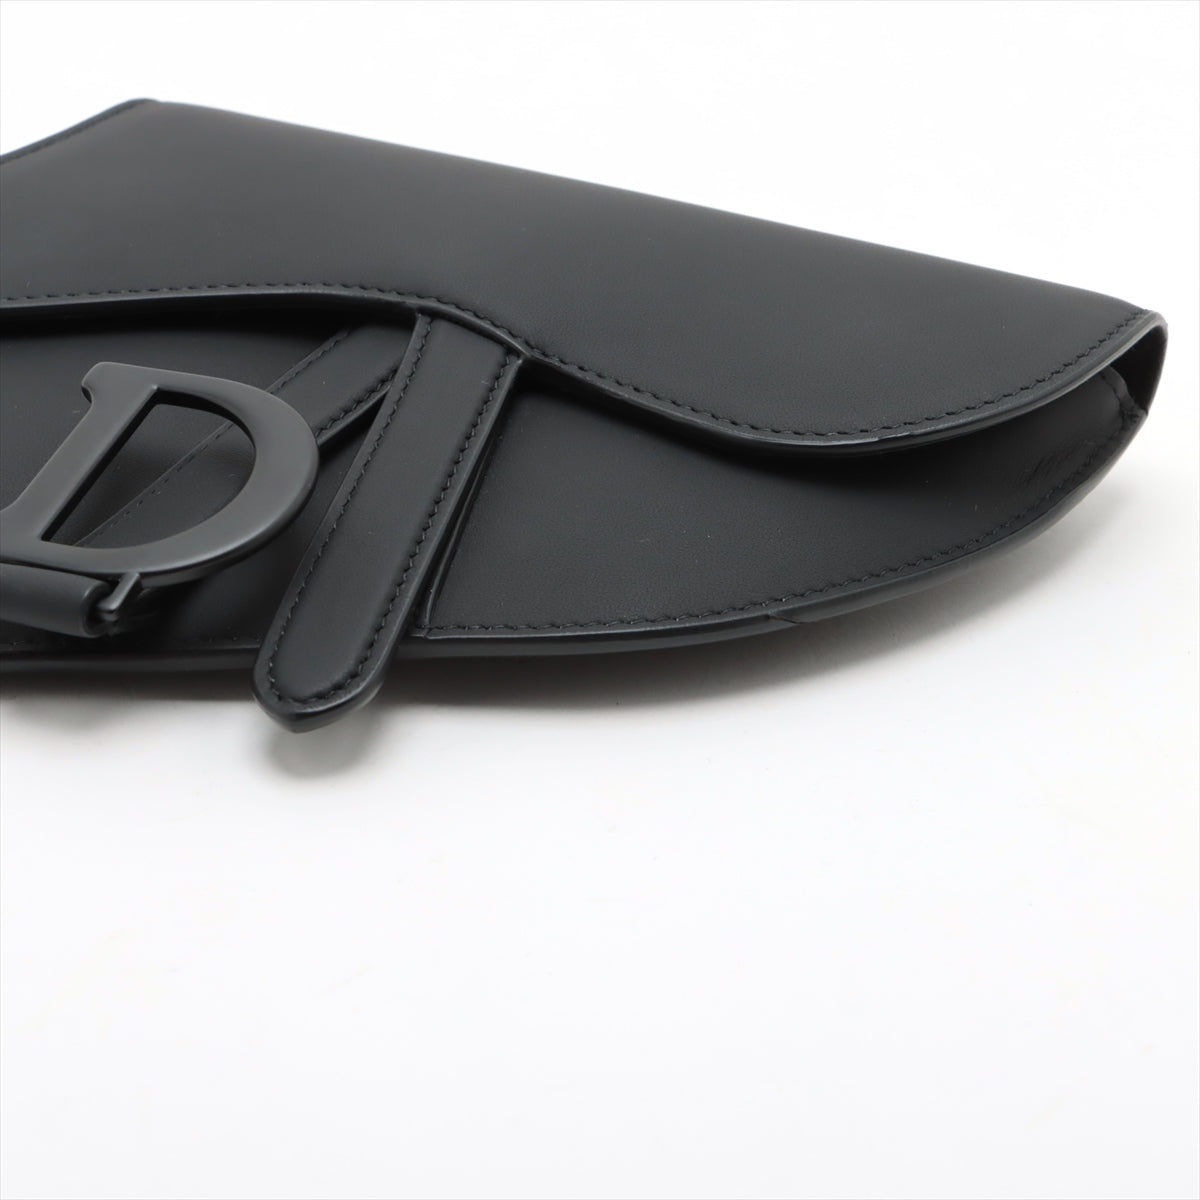 Christian Dior Saddle Leather Sling backpack Black